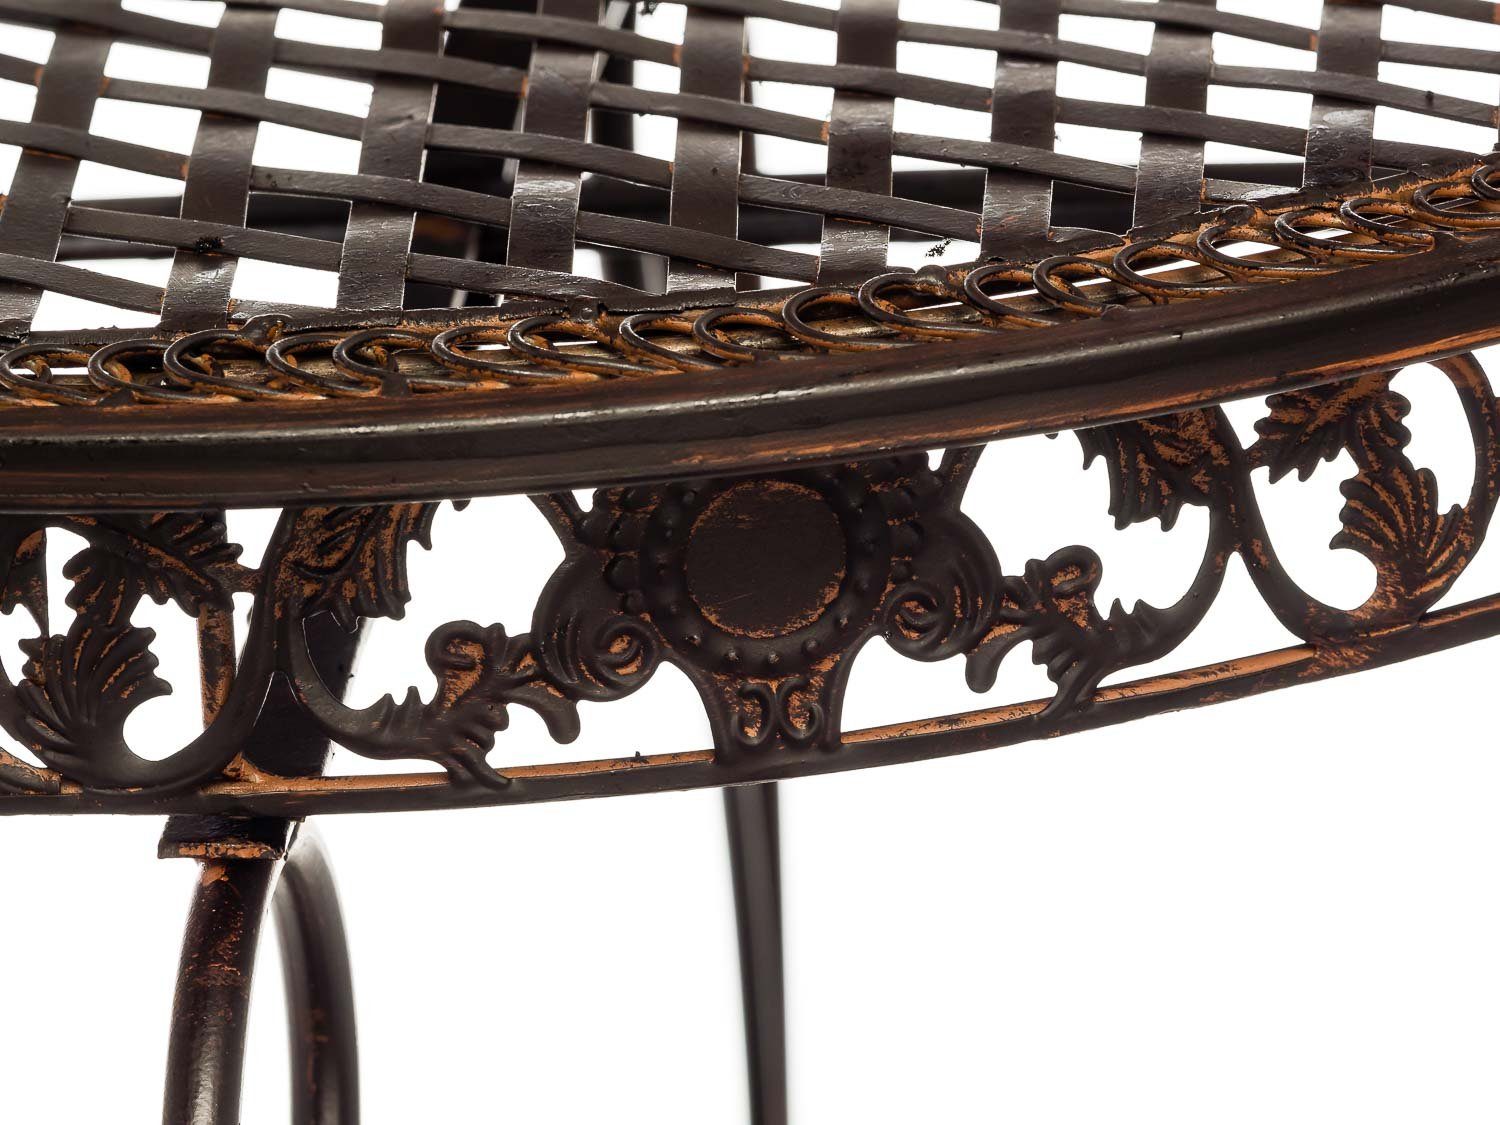 Aubaho Sitzgruppe Gartentisch Tisch Eisen Bistromöbel und Stühle 4 Antik-Stil Gartenmöbe